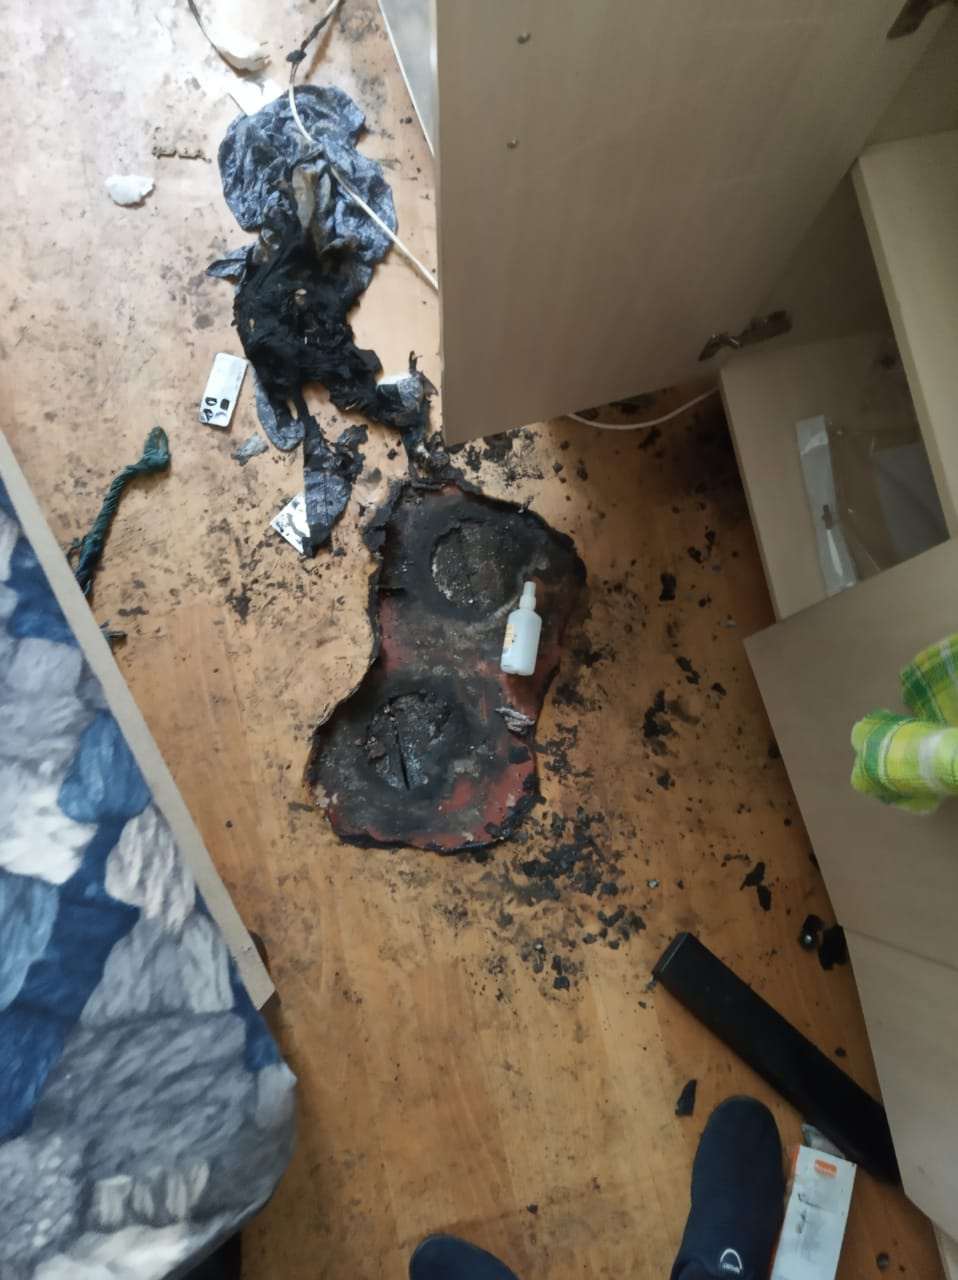 Чтобы скрыть следы преступления, парень попытался поджечь квартиру